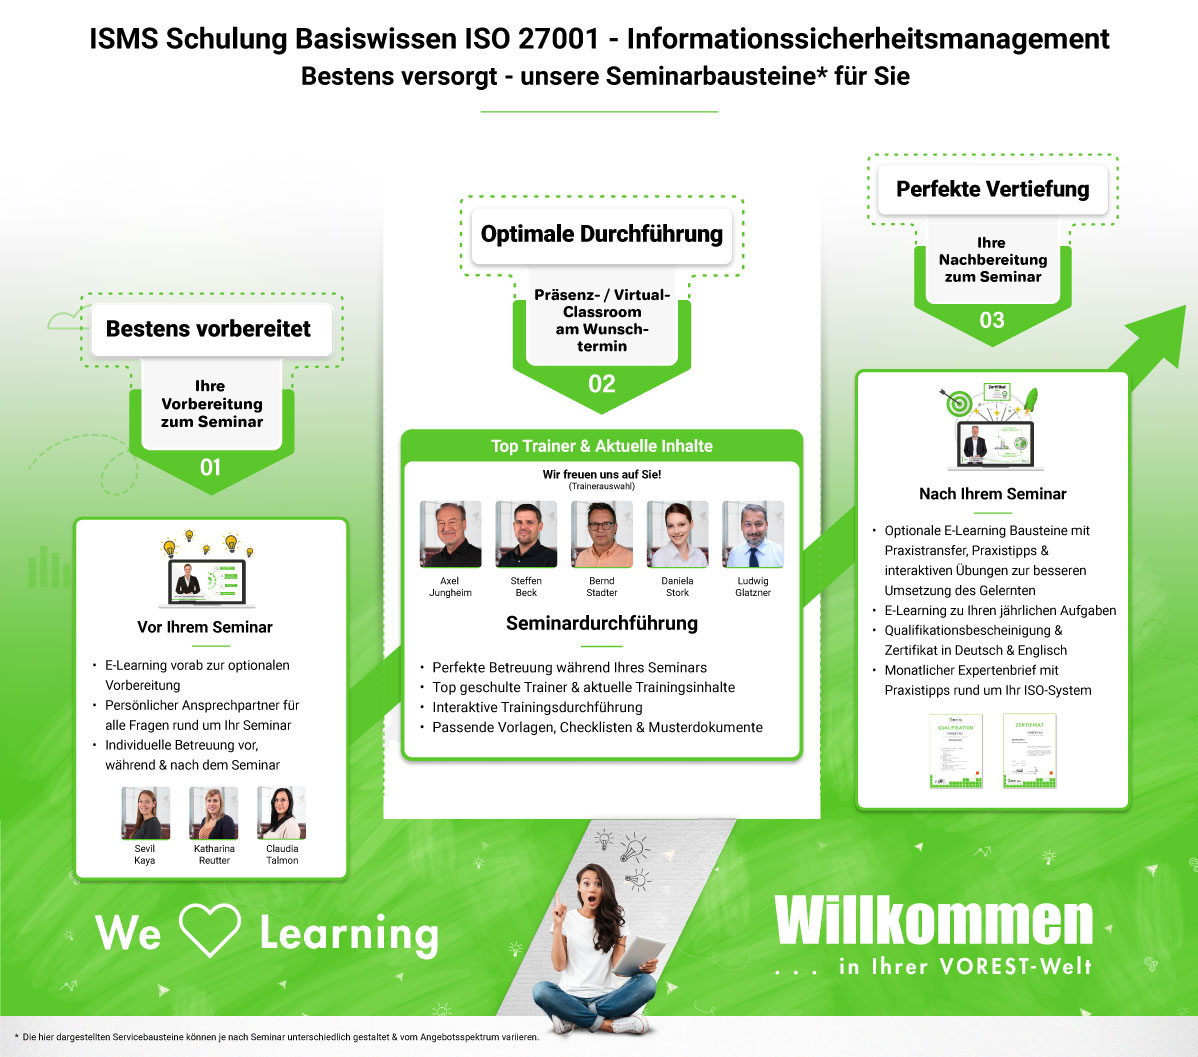 ISMS Schulung Basiswissen ISO 27001 - Informationssicherheitsmanagement